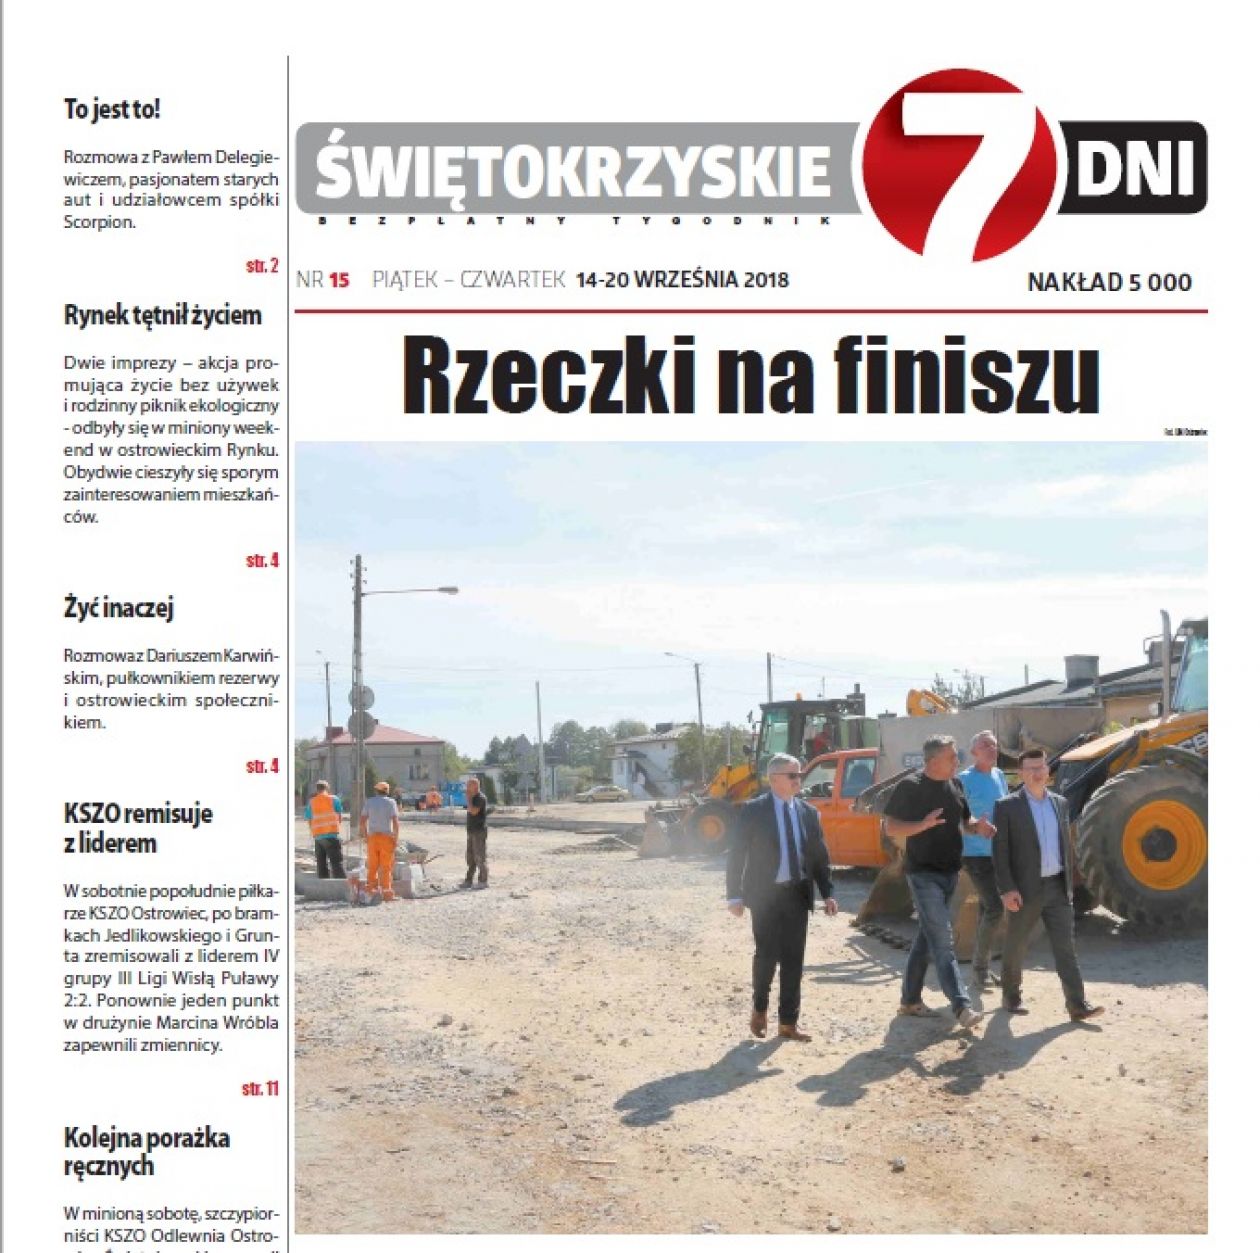 Tygodnik ŚWIĘTOKRZYSKIE 7 DNI nr 15 z 14.09.2018